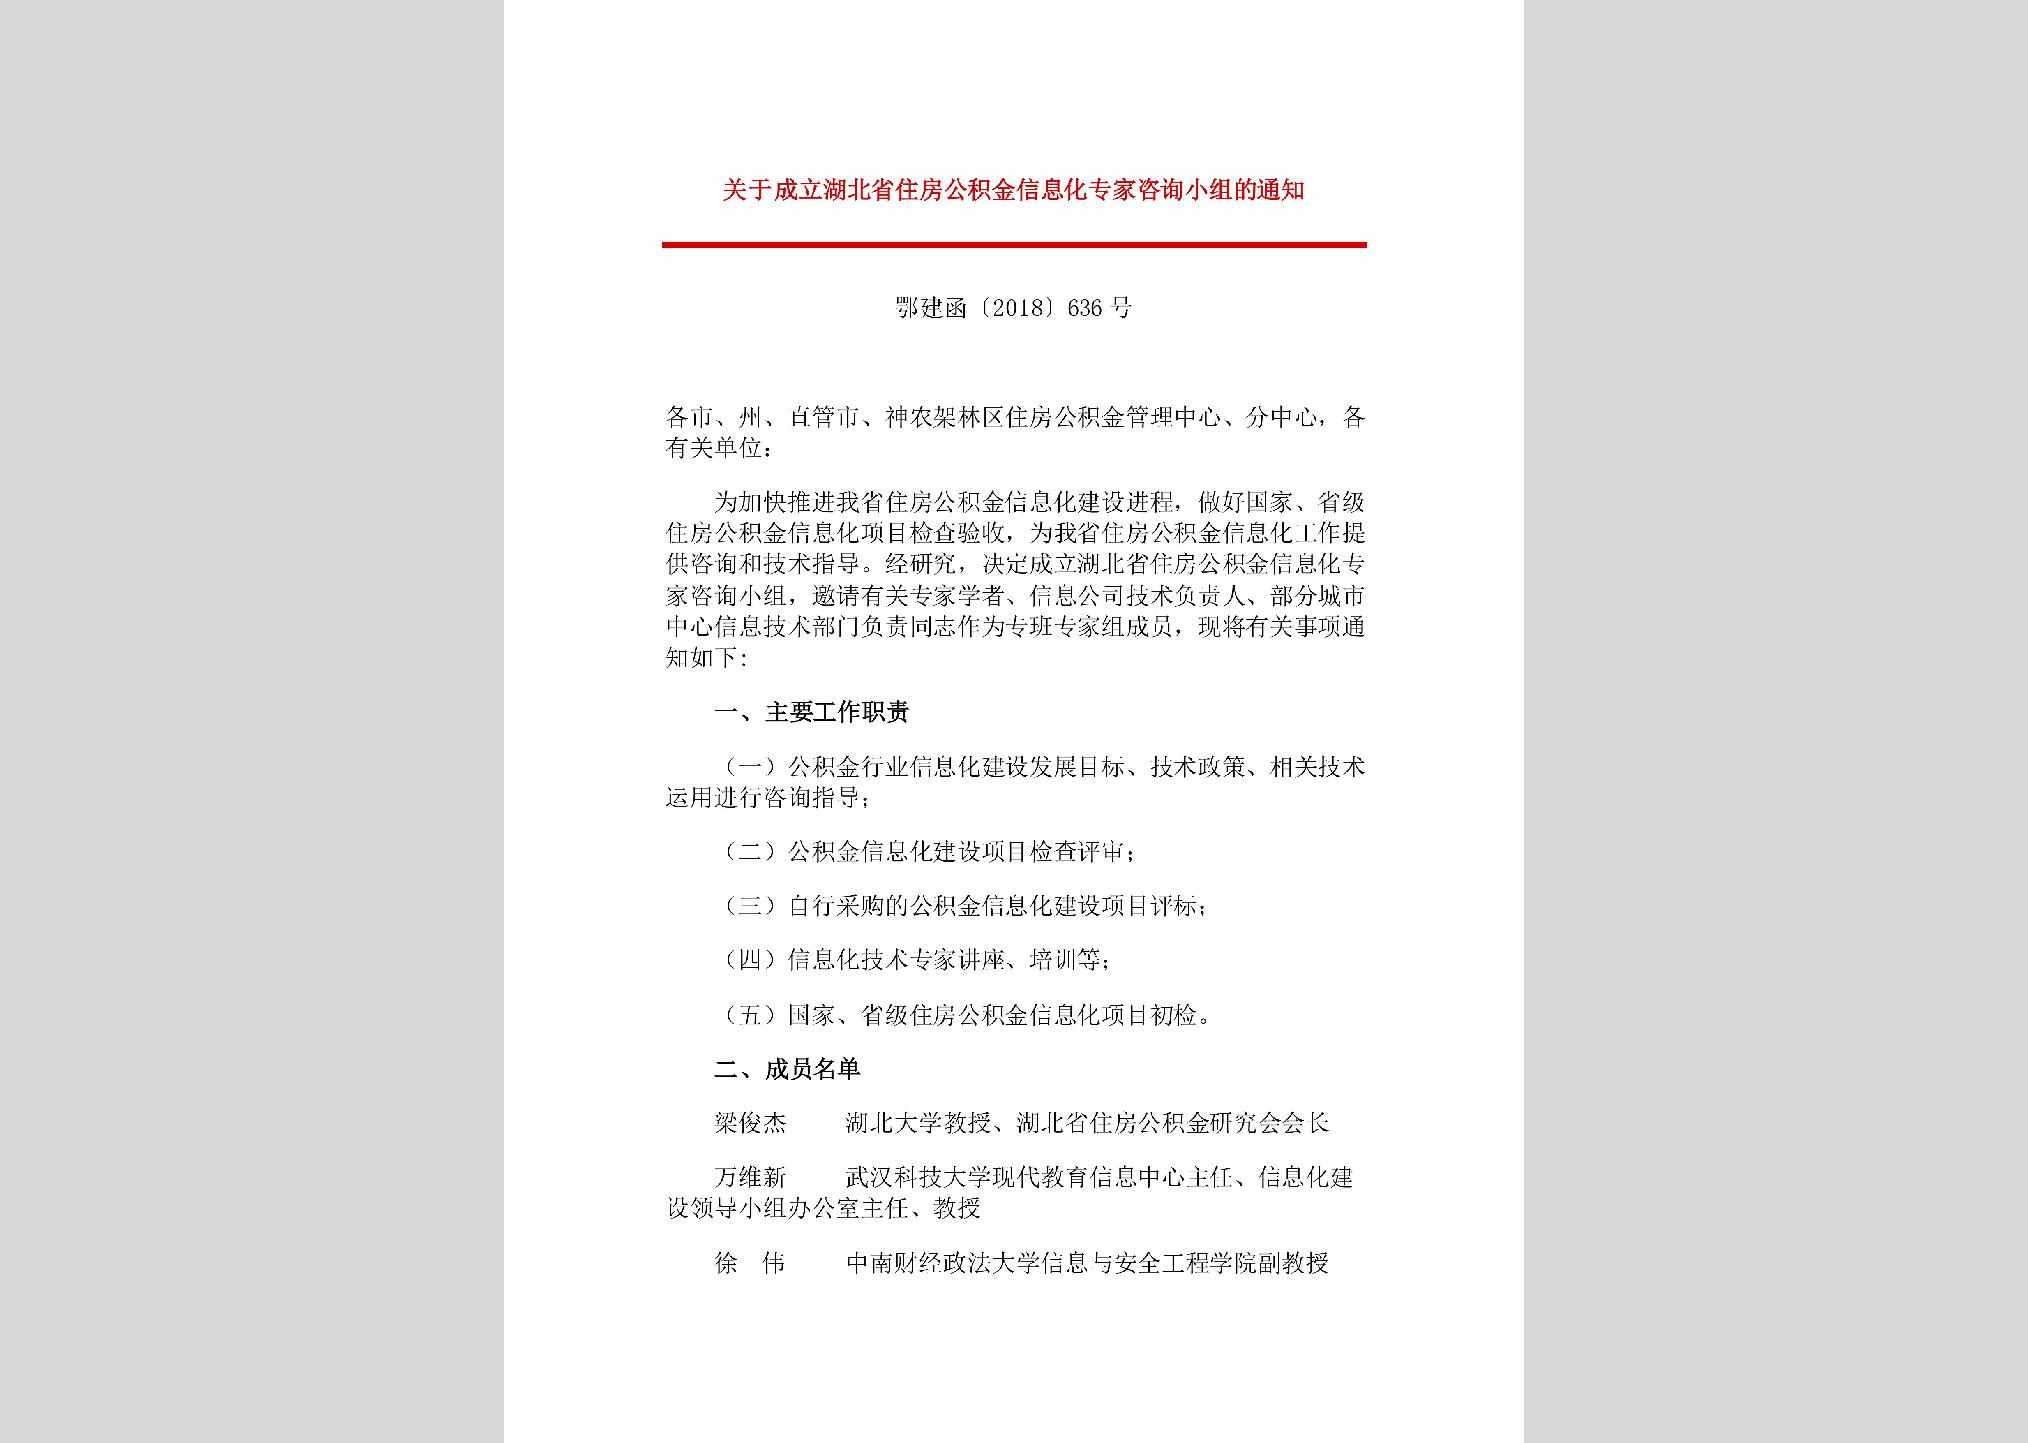 鄂建函[2018]636号：关于成立湖北省住房公积金信息化专家咨询小组的通知